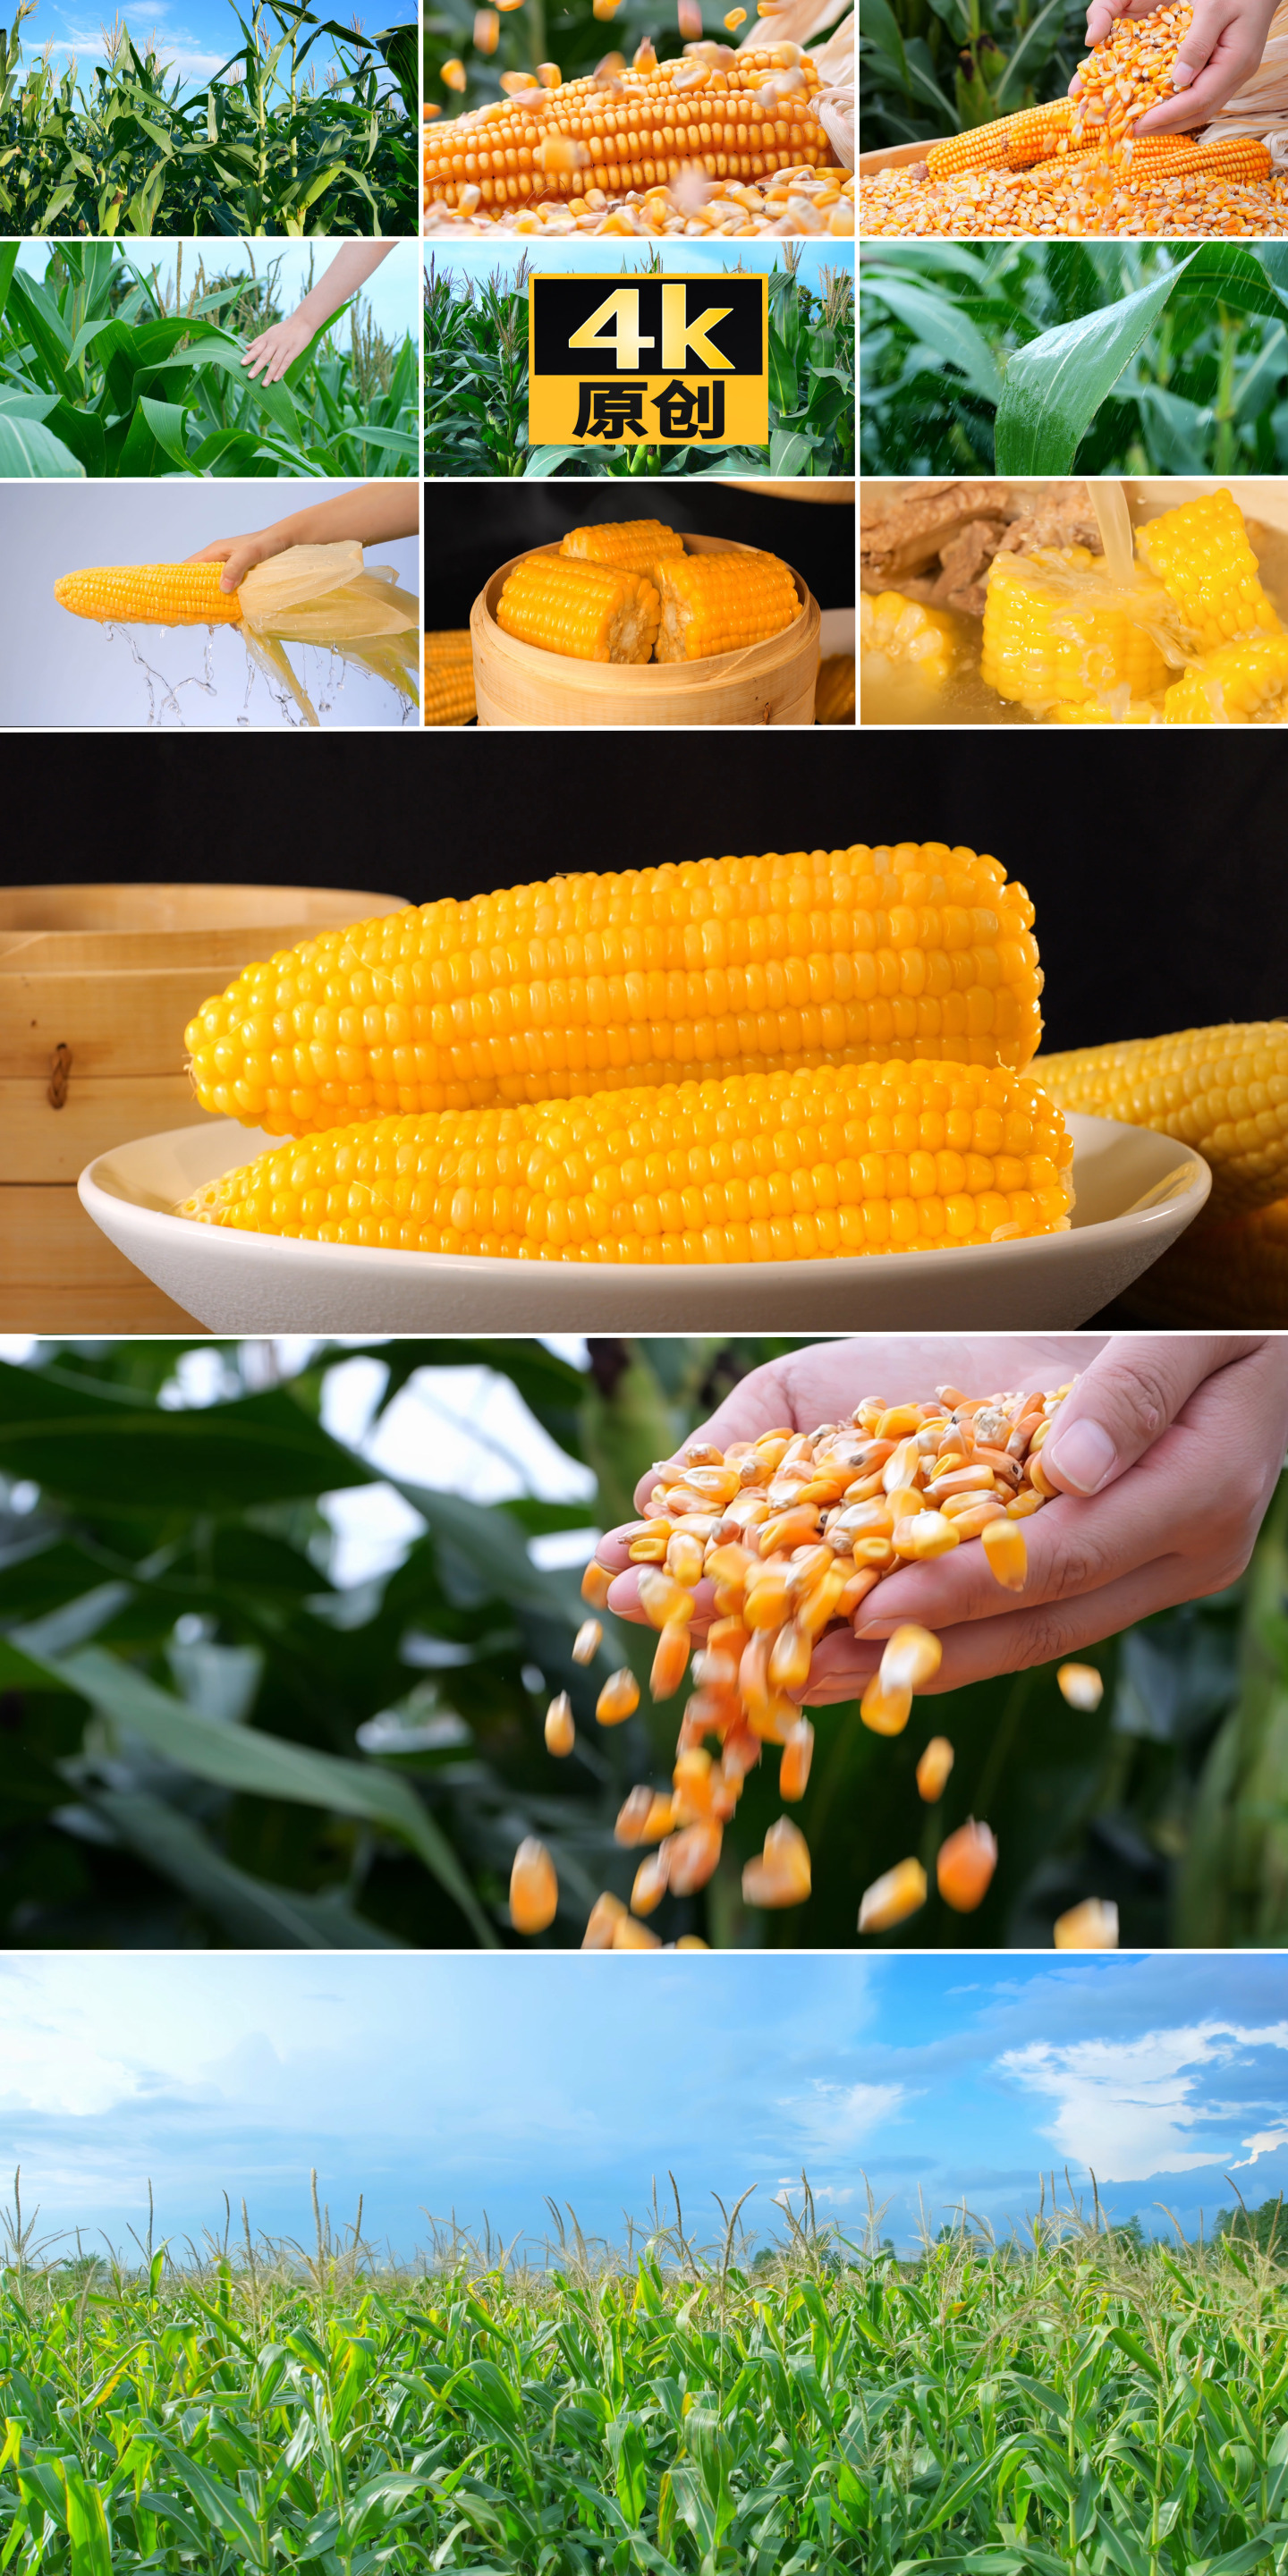 玉米丰收谷物种植玉米排骨